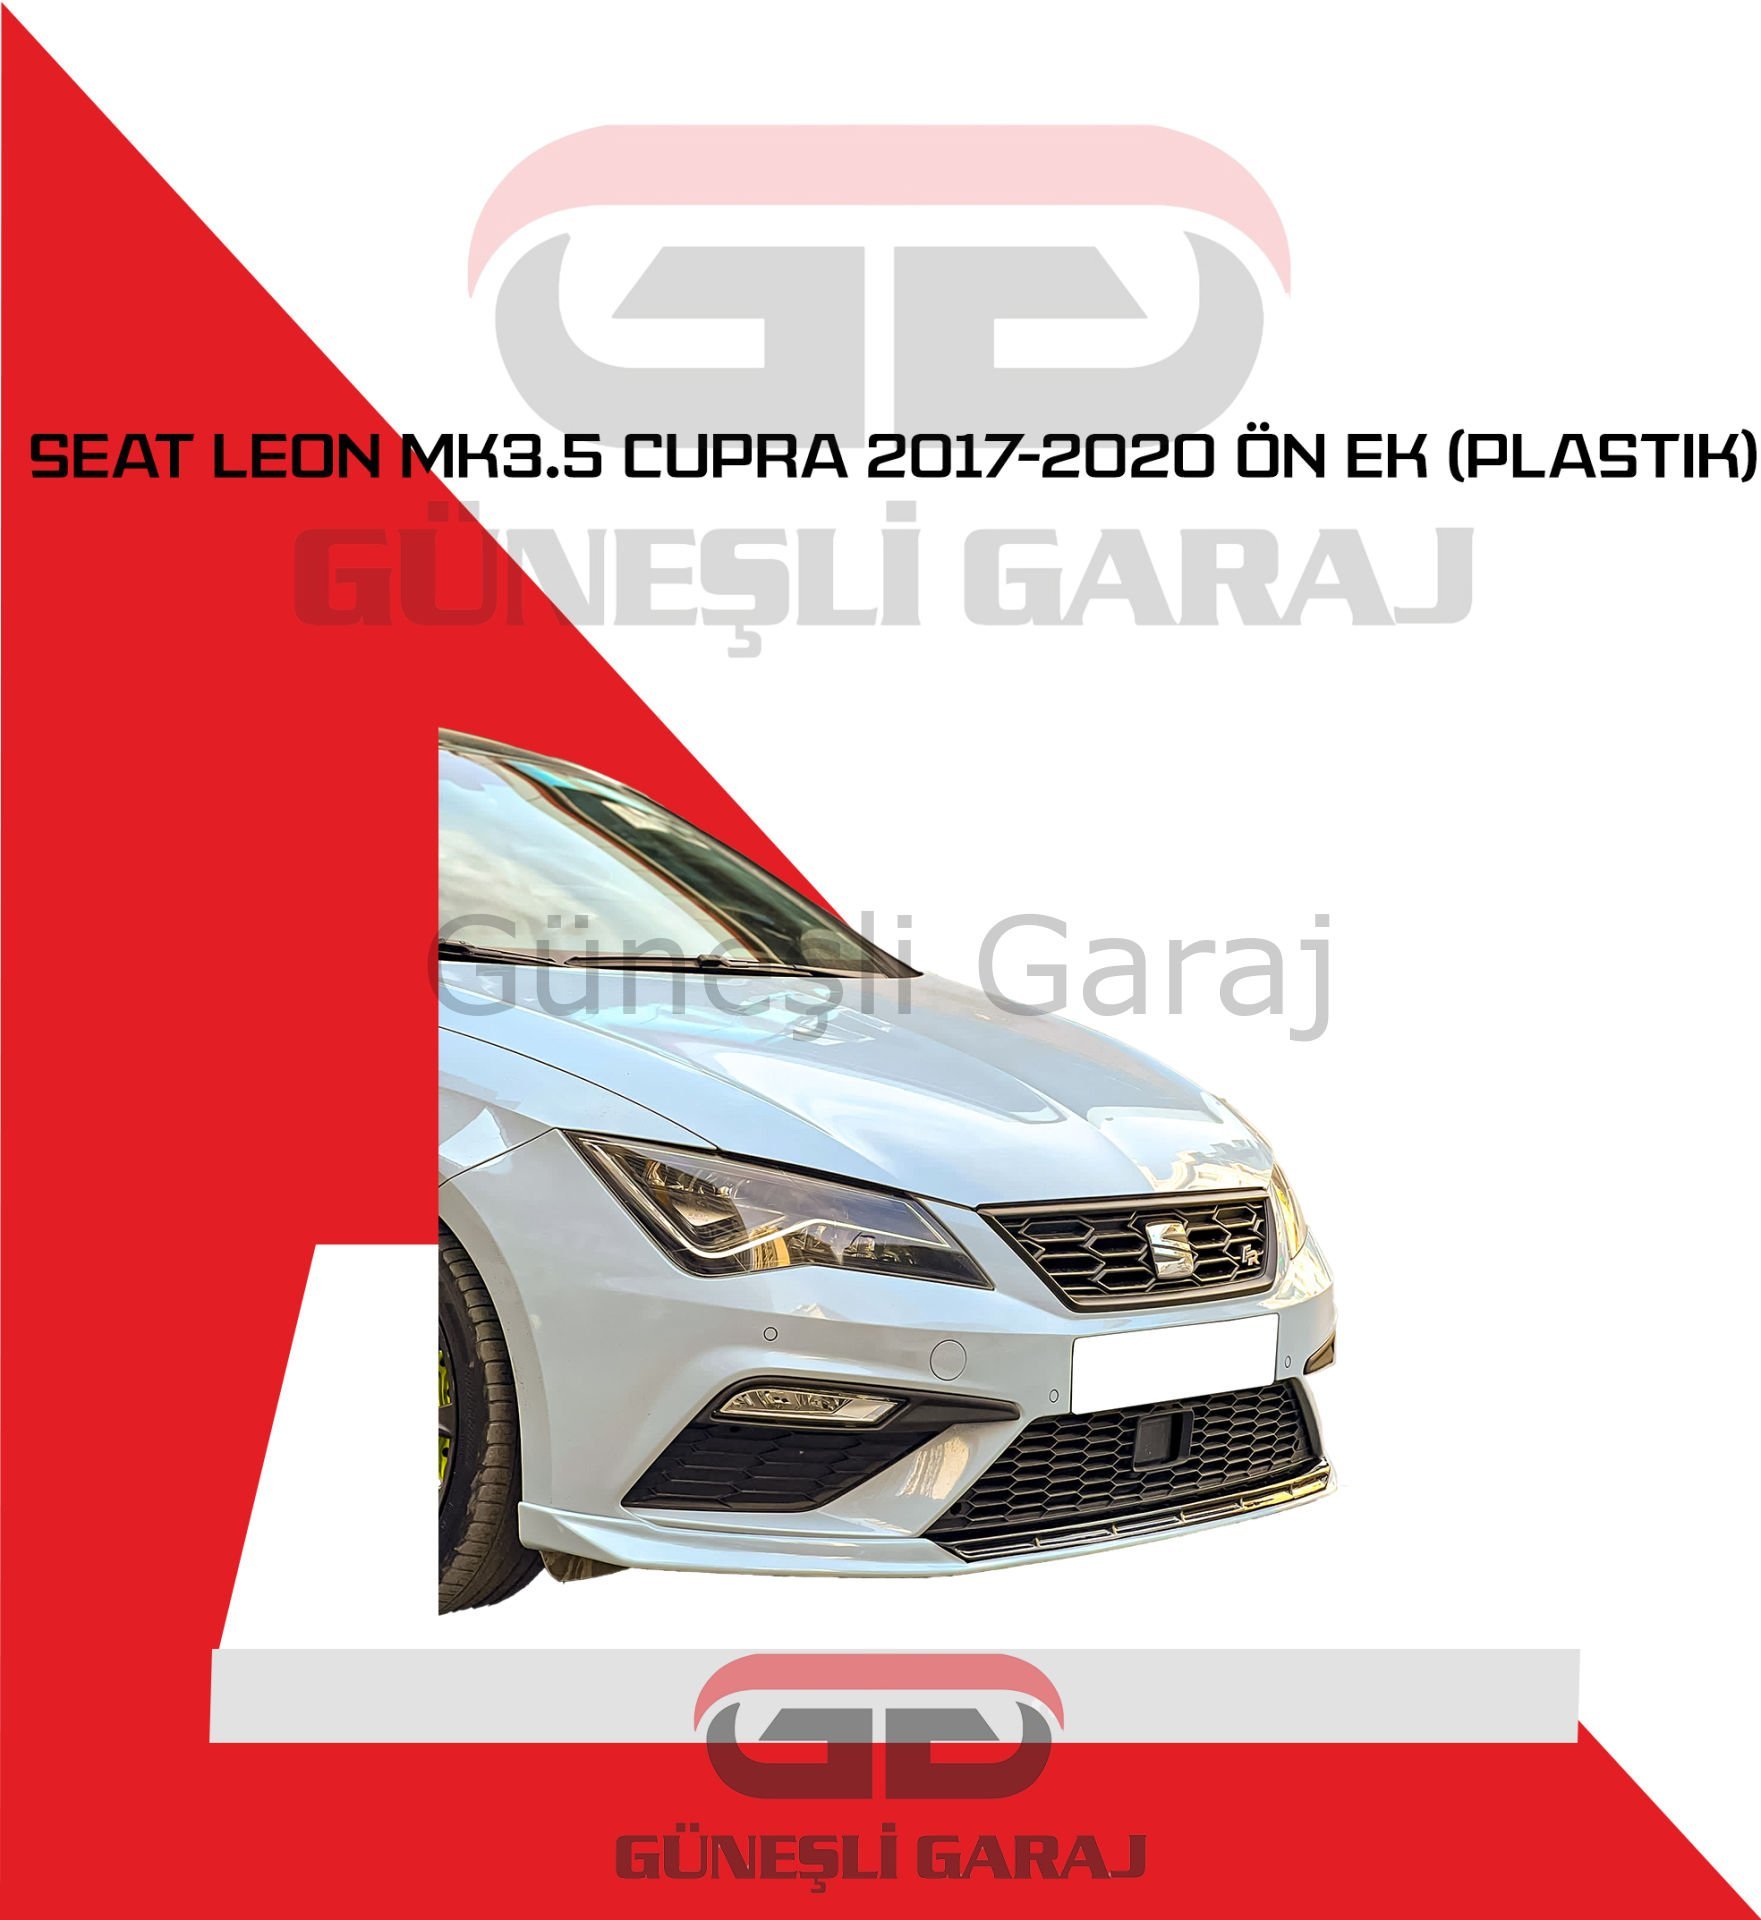 Seat Leon Mk3.5 Cupra 2017-2020 Ön Ek (Plastik)